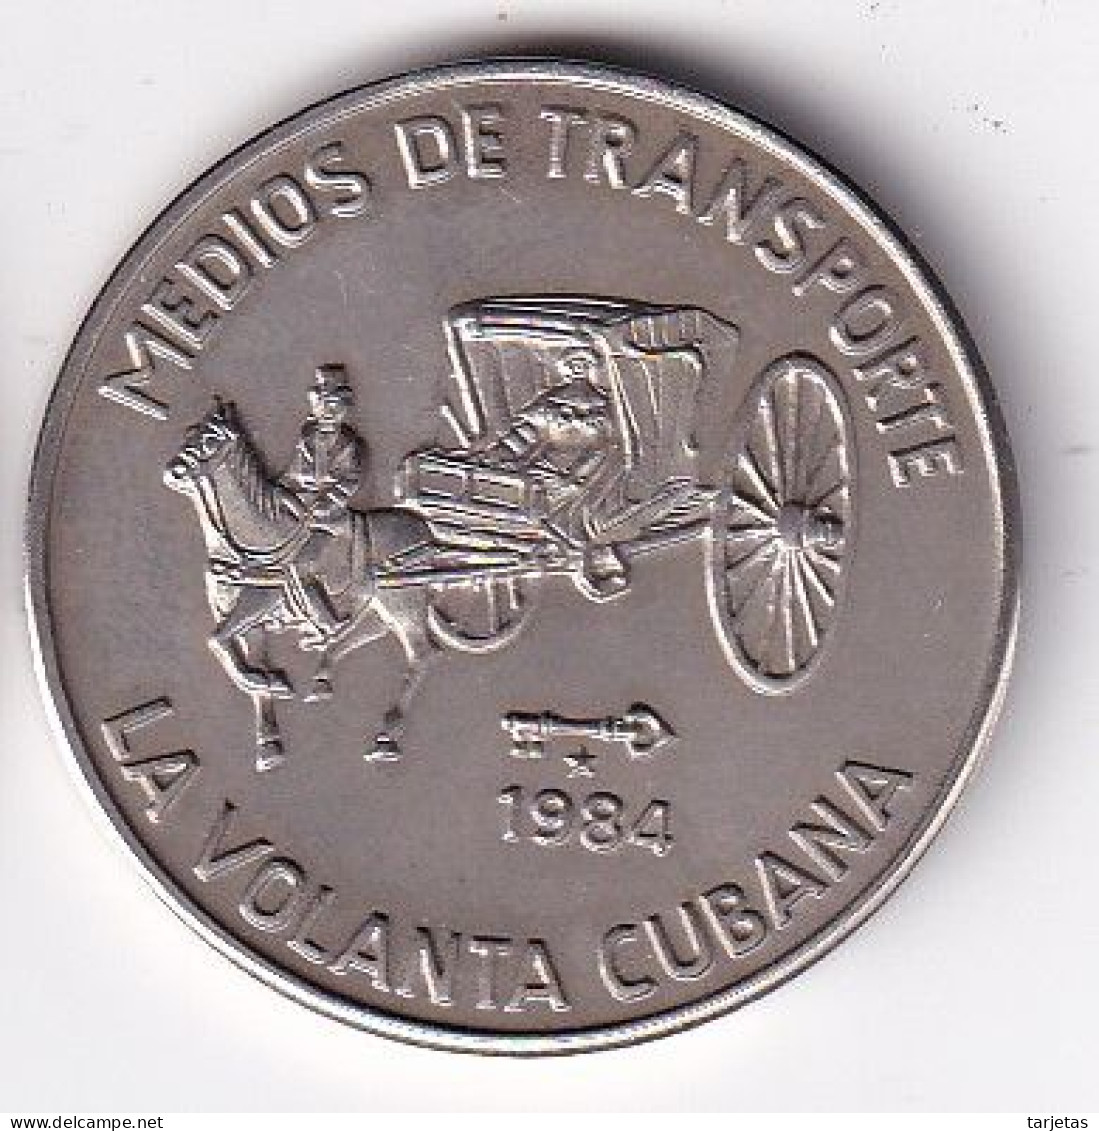 MONEDA DE CUBA DE 1 PESO DEL AÑO 1983 DE MEDIOS TRANSPORTE - LA VOLANTA (COIN) (NUEVA - UNC) - Kuba